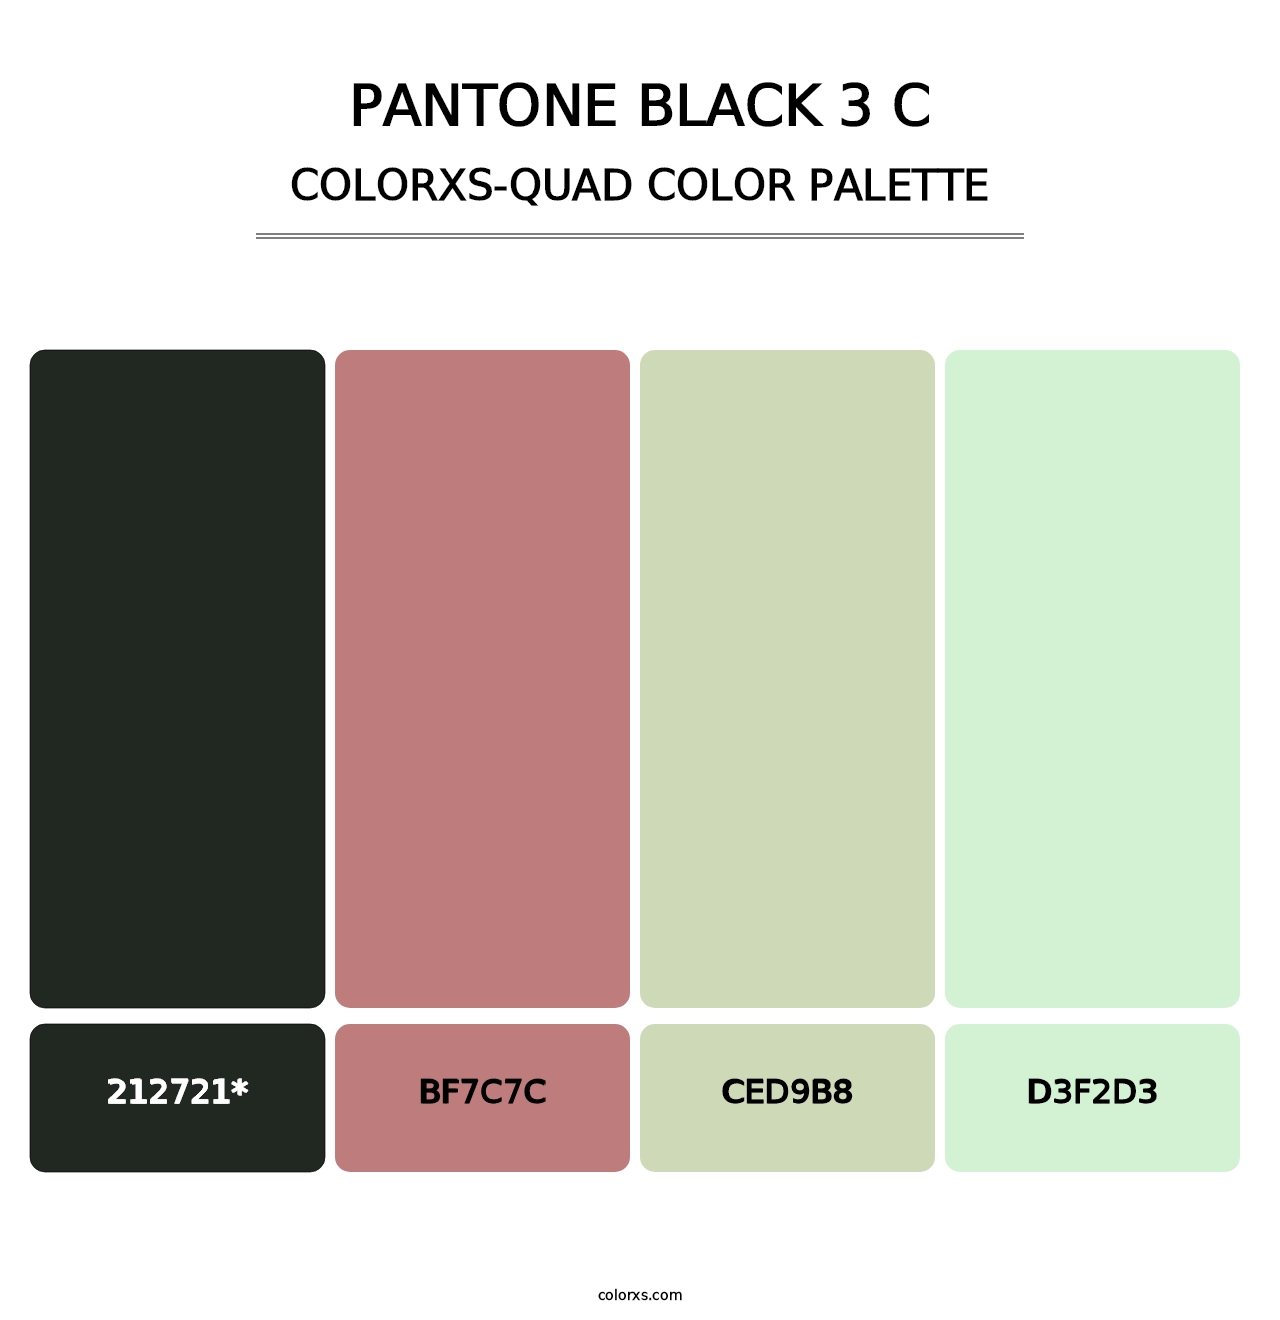 PANTONE Black 3 C - Colorxs Quad Palette